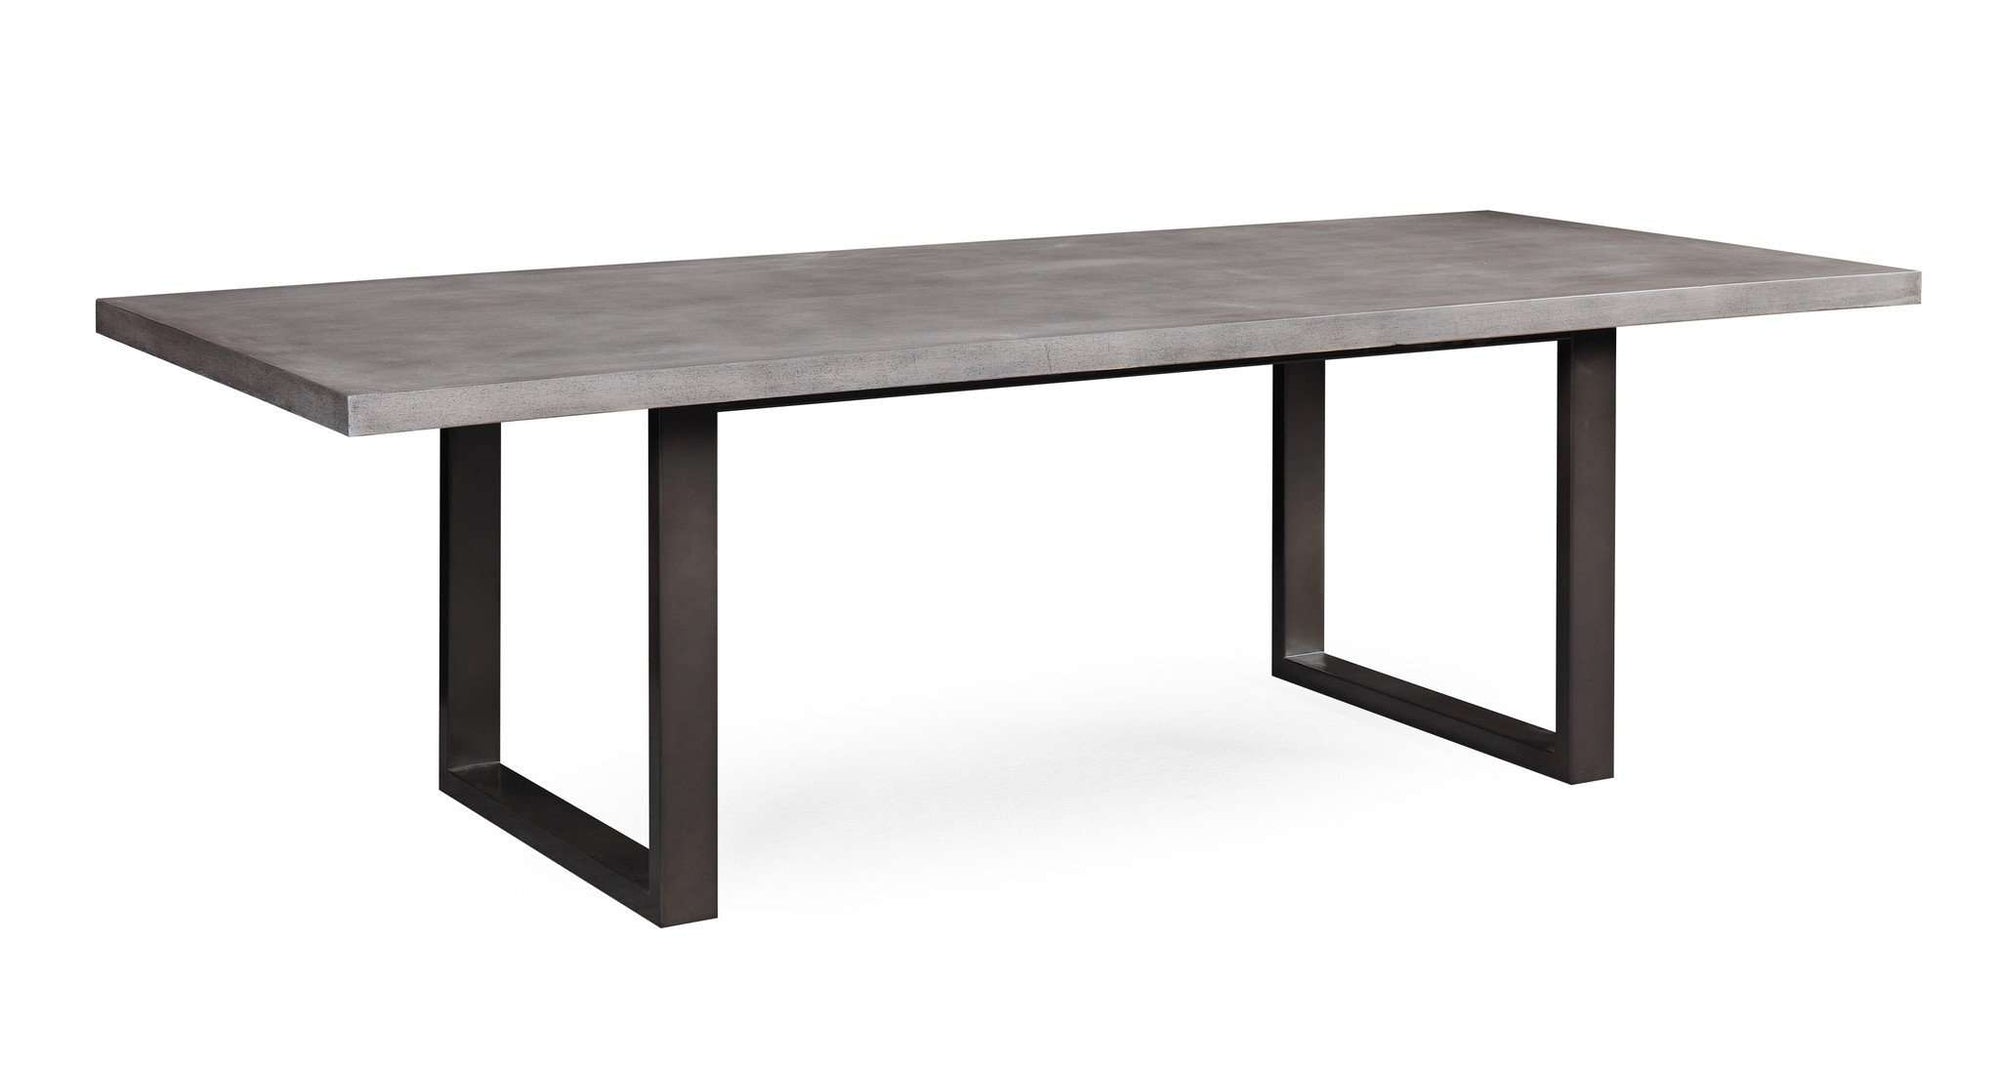 Tov-Edna Concrete Table-Table-MODTEMPO